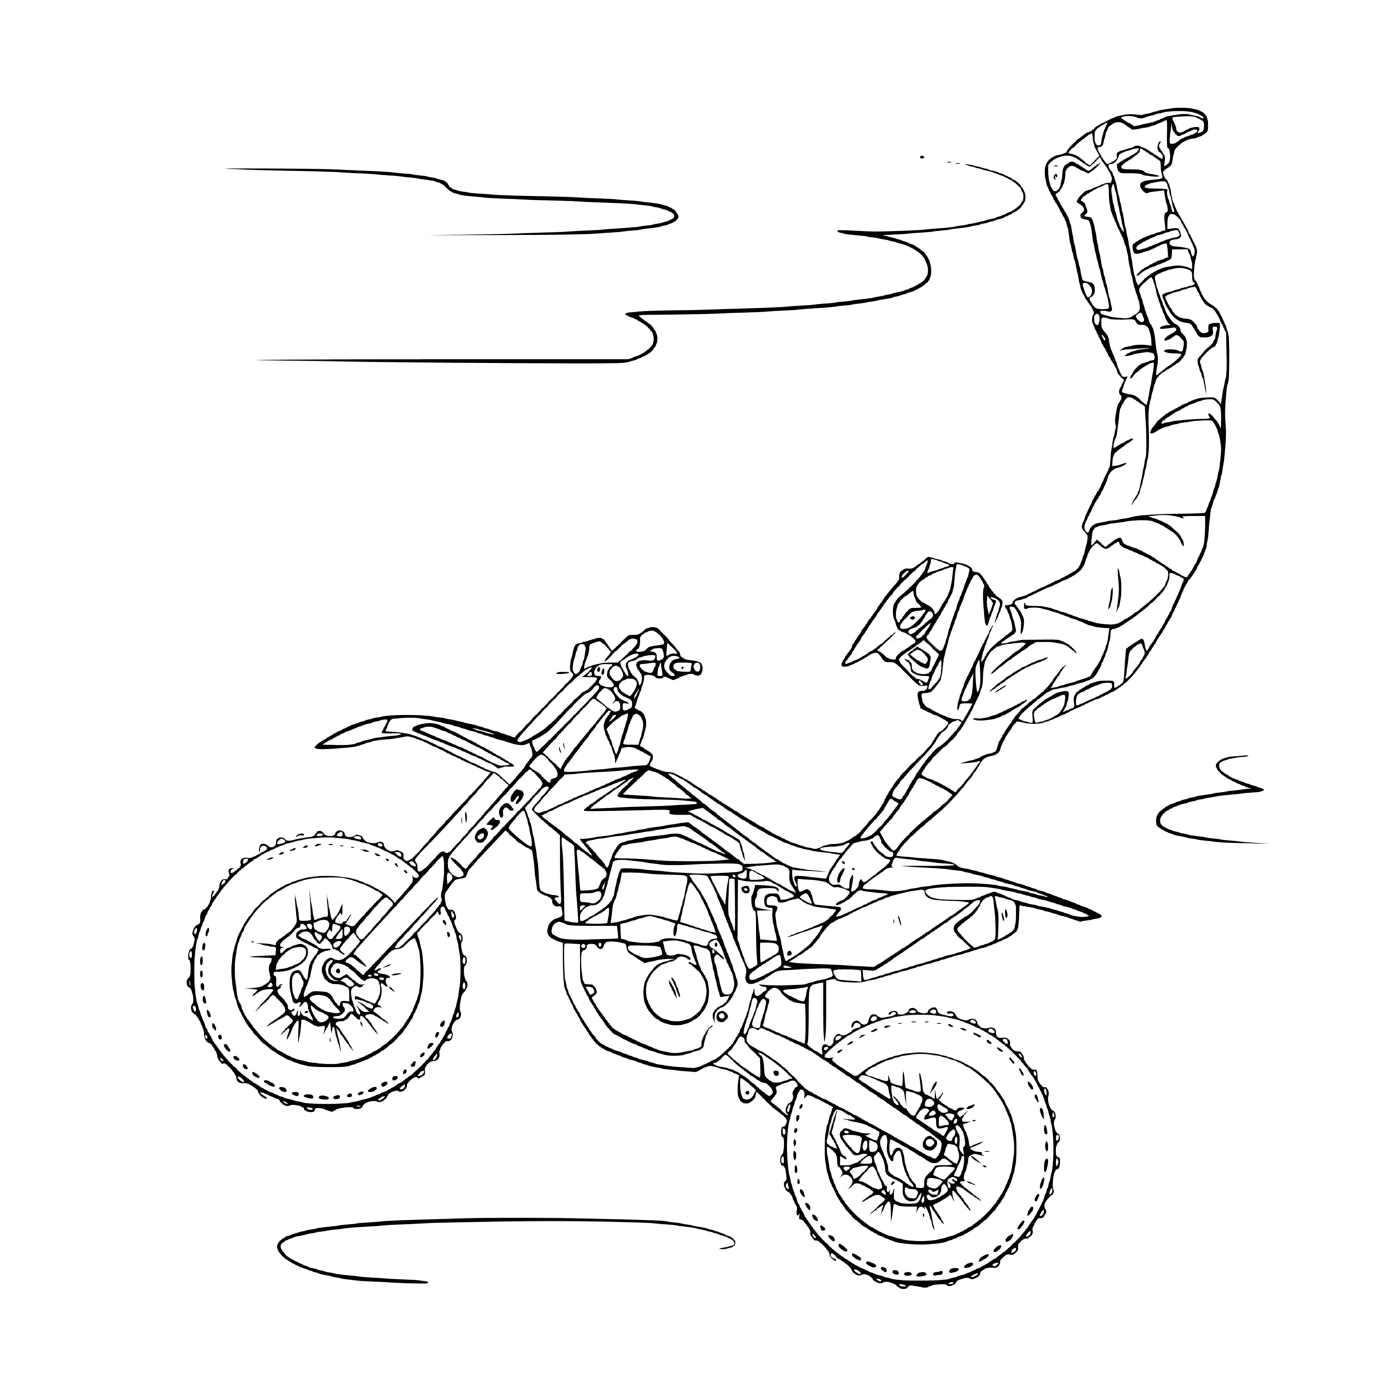  человек прыгает в мотокросс 